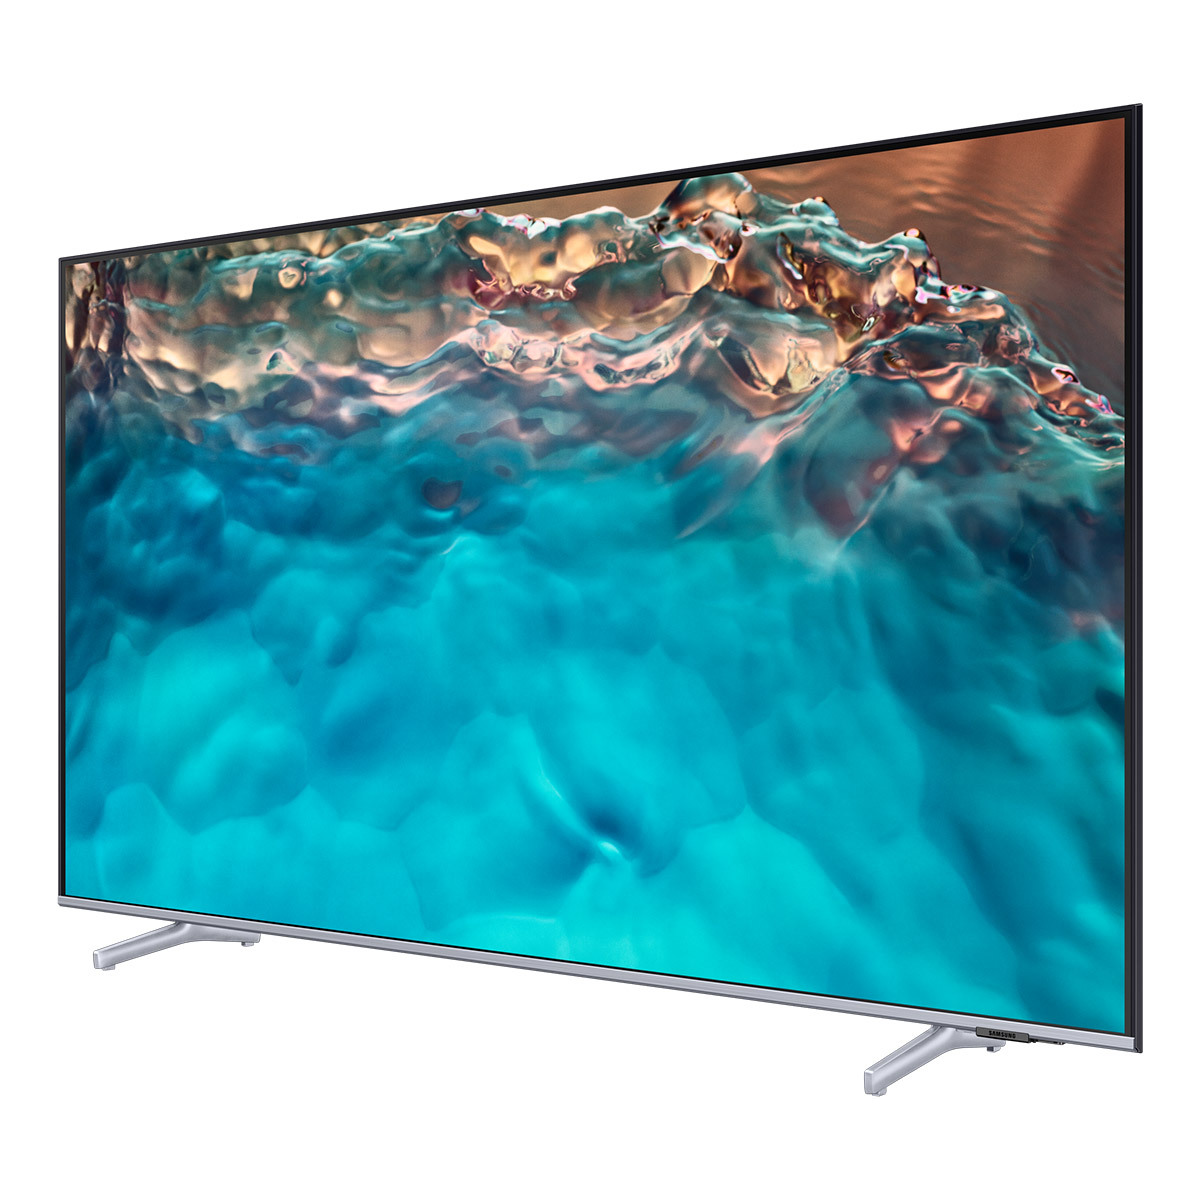 삼성 Crystal UHD TV KU55UB8000FXKR 138cm (55)